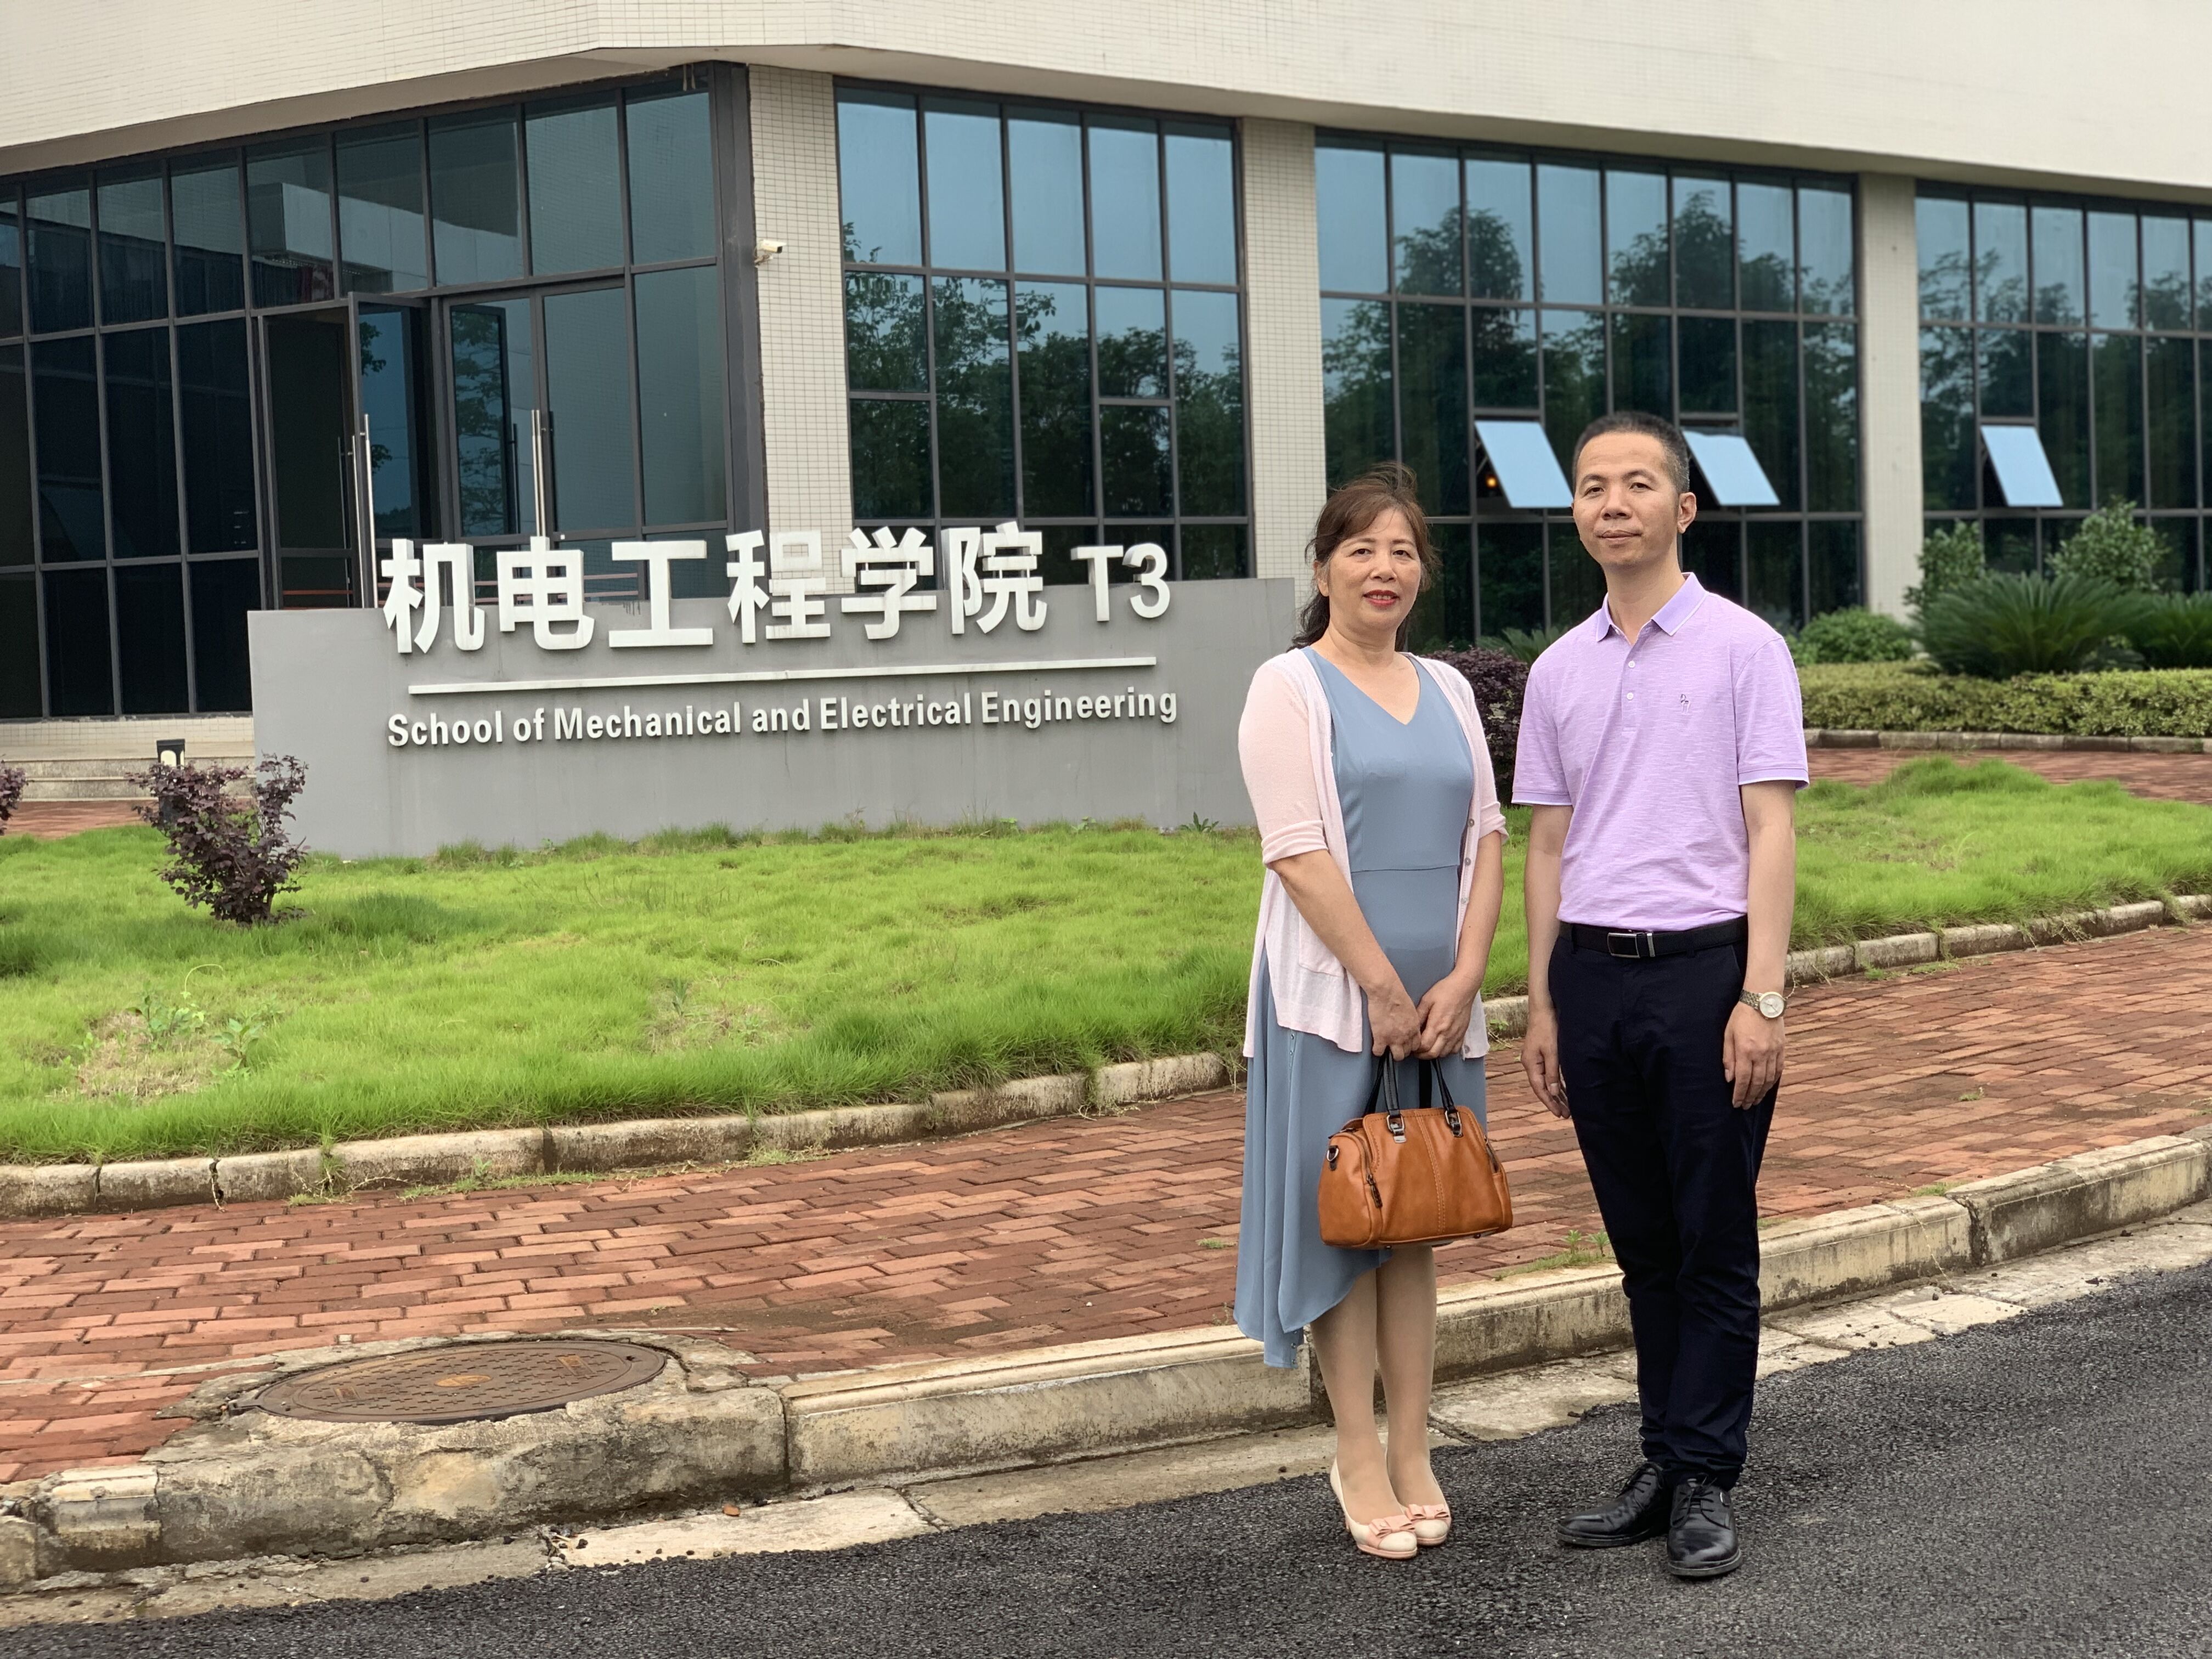 韦庆明（右）回母校看望老师。他创建的浙江台州创英模具有限公司，为社会提供就业岗位70余个，2018年公司上缴税金总额187万元.jpg